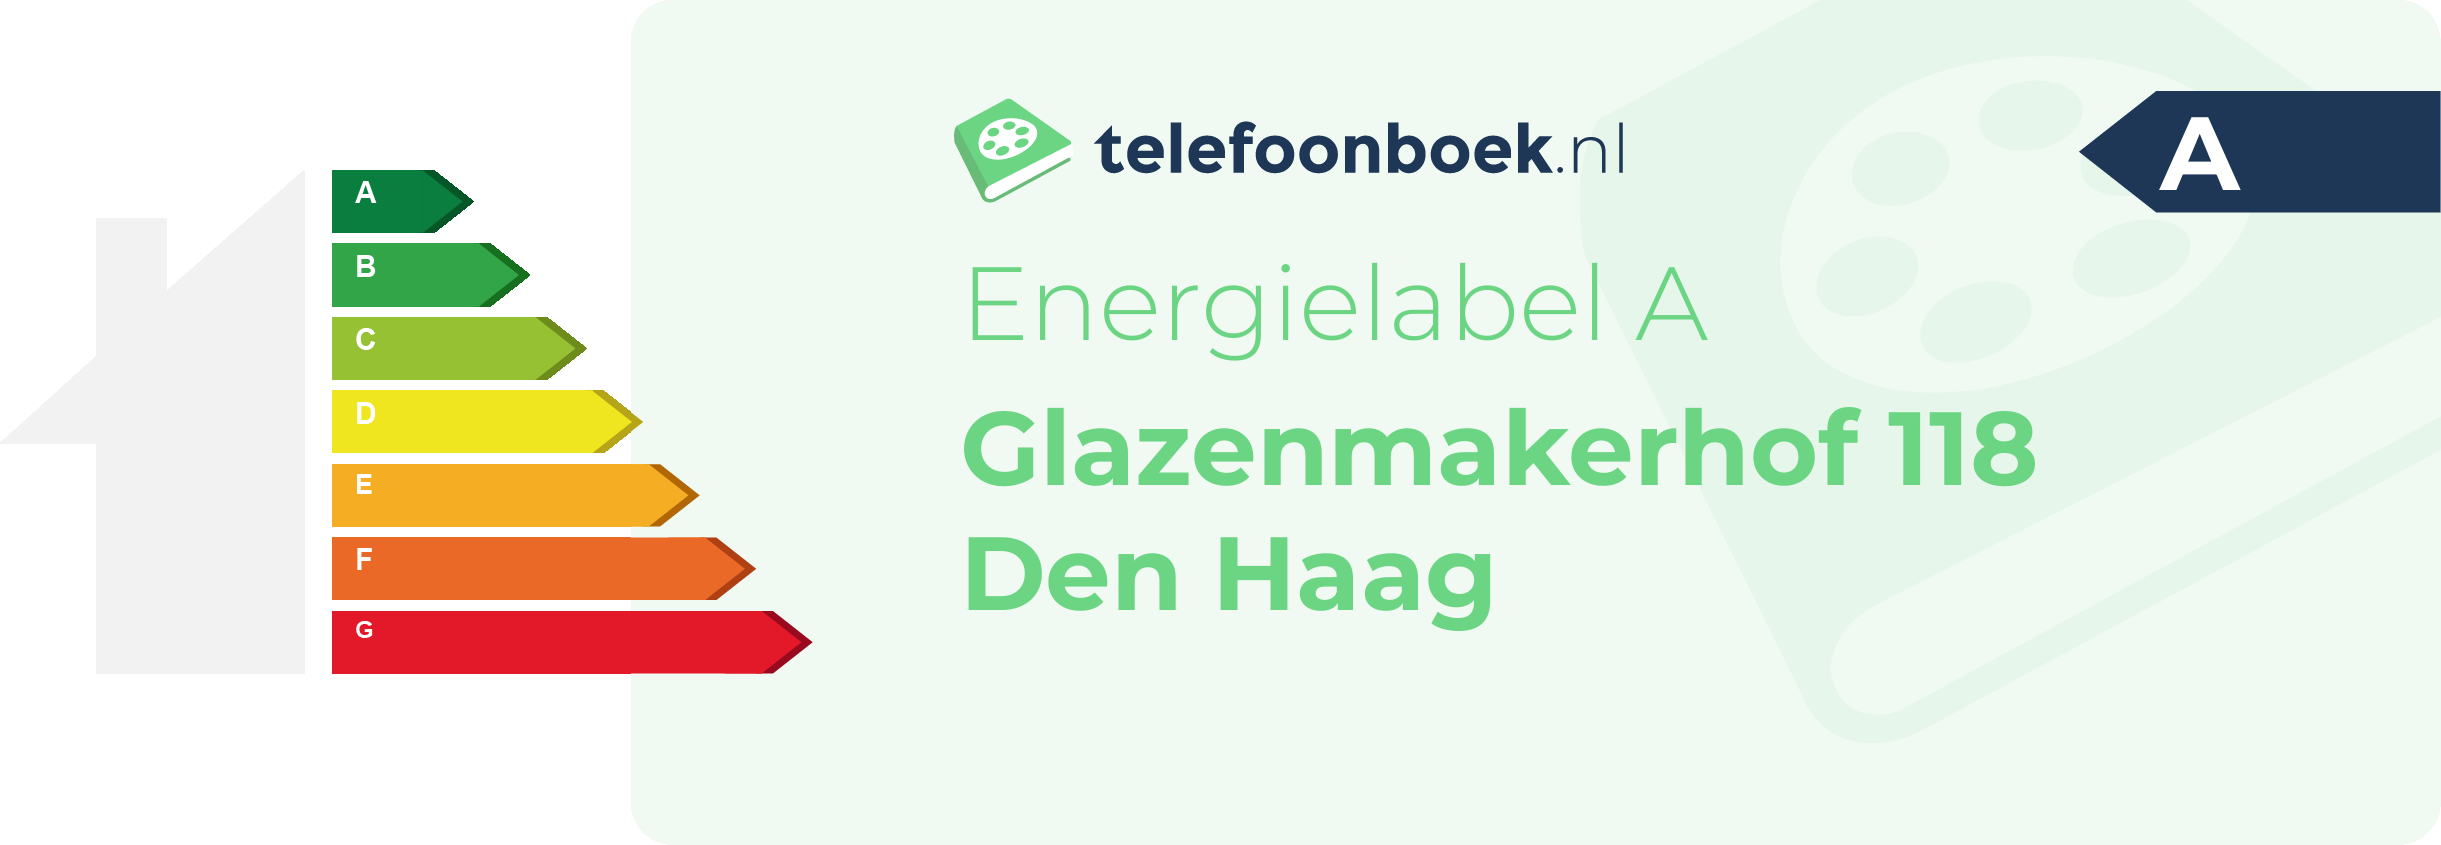 Energielabel Glazenmakerhof 118 Den Haag